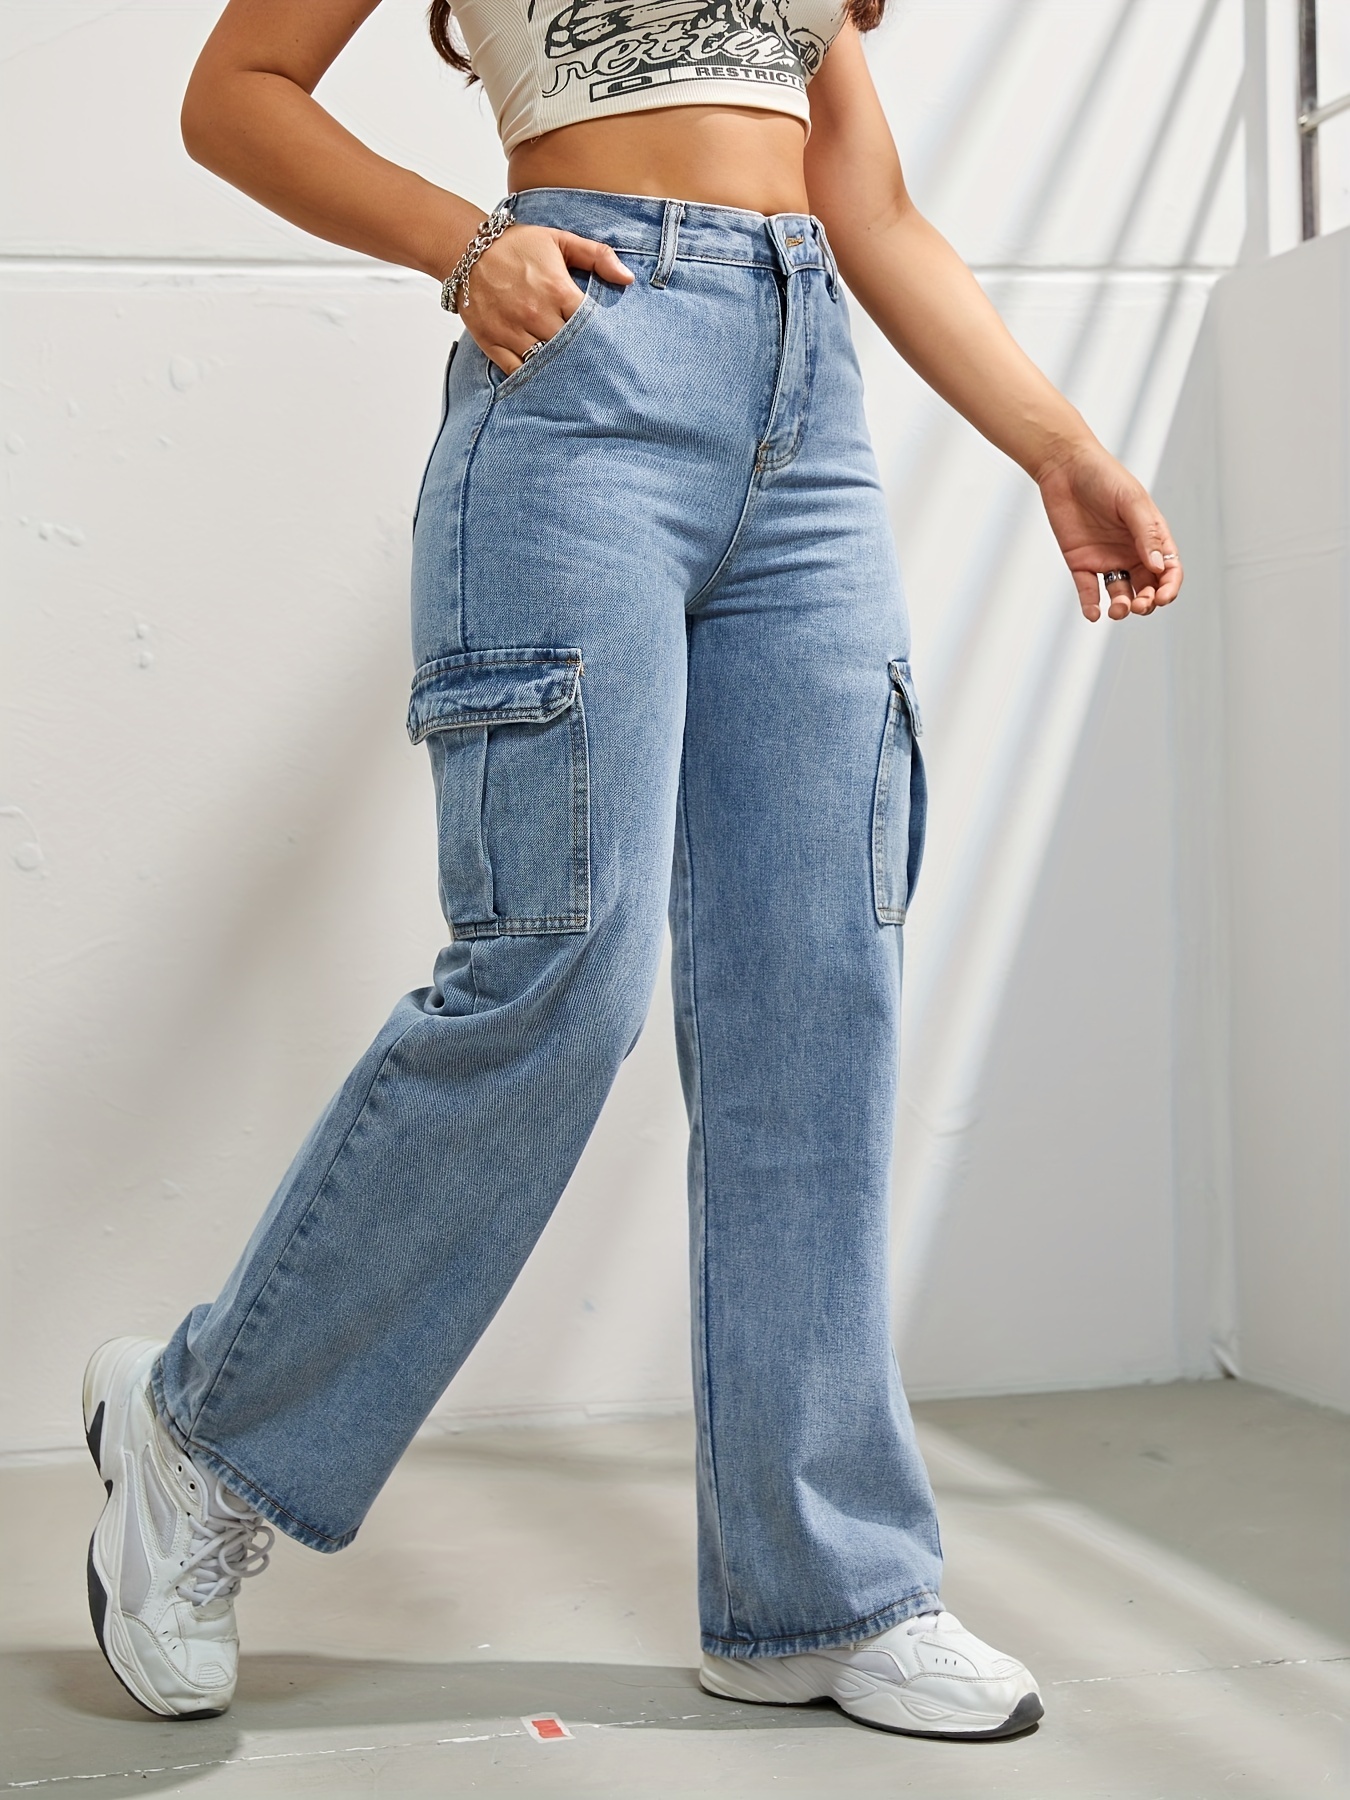  Jeans Pantalones Pantalones Los jeans de las mujeres